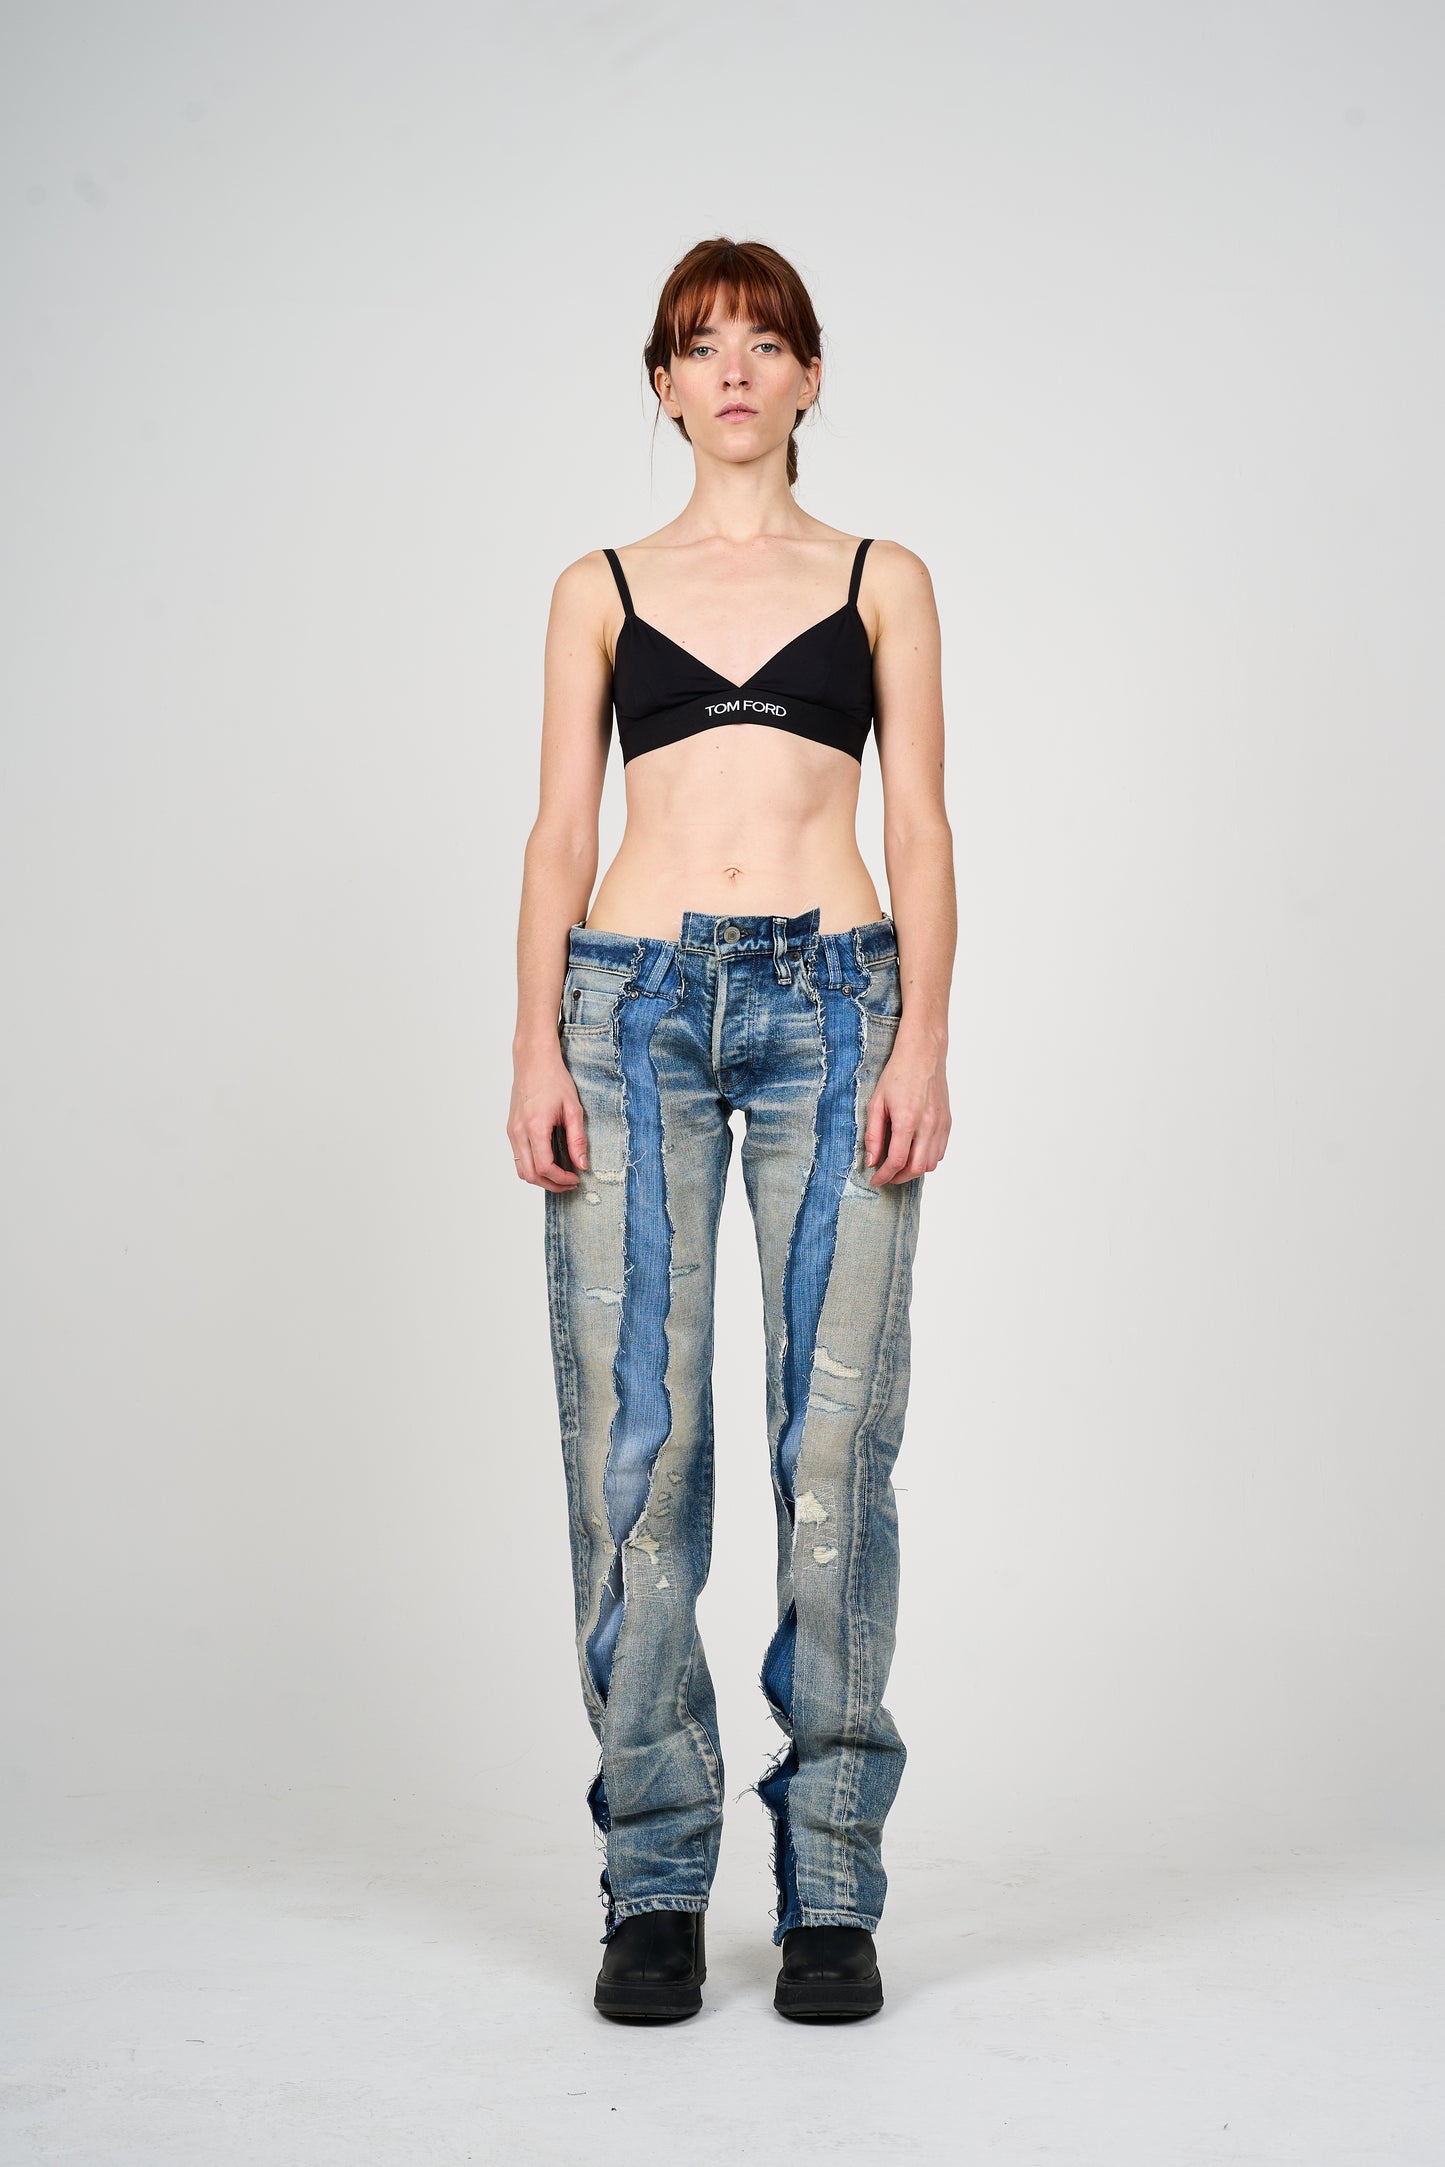 Denim_Jeans_1_Fabric Brand x Alenkie